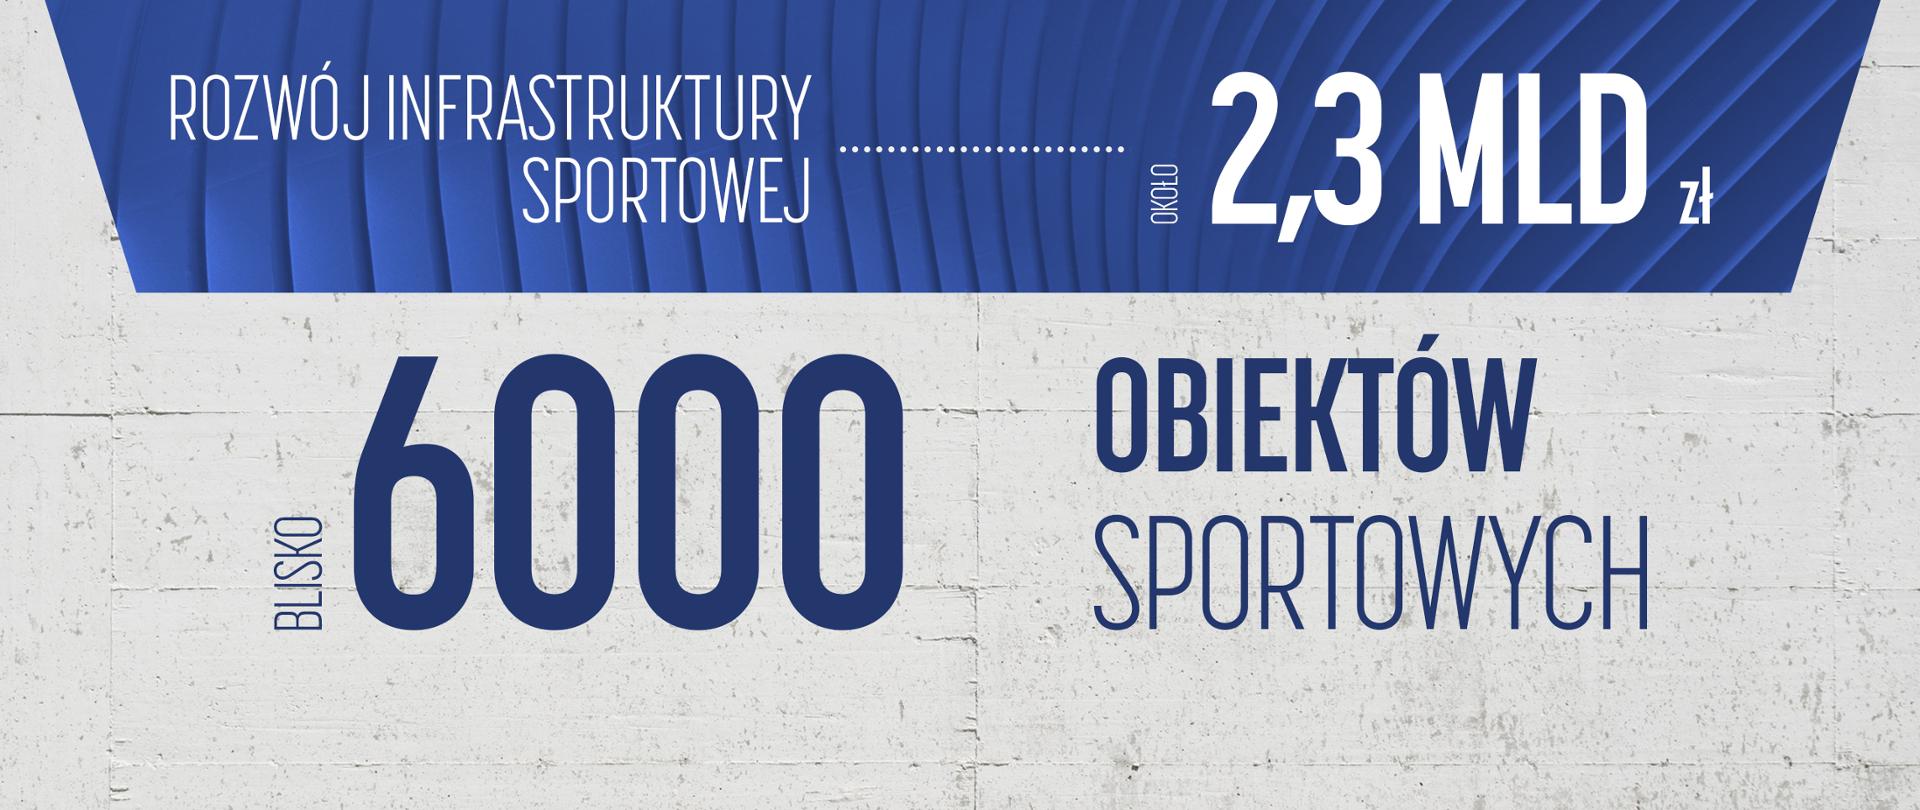 Blisko 6000 obiektów sportowych w całej Polsce ze wsparciem Ministerstwa Sportu i Turystyki